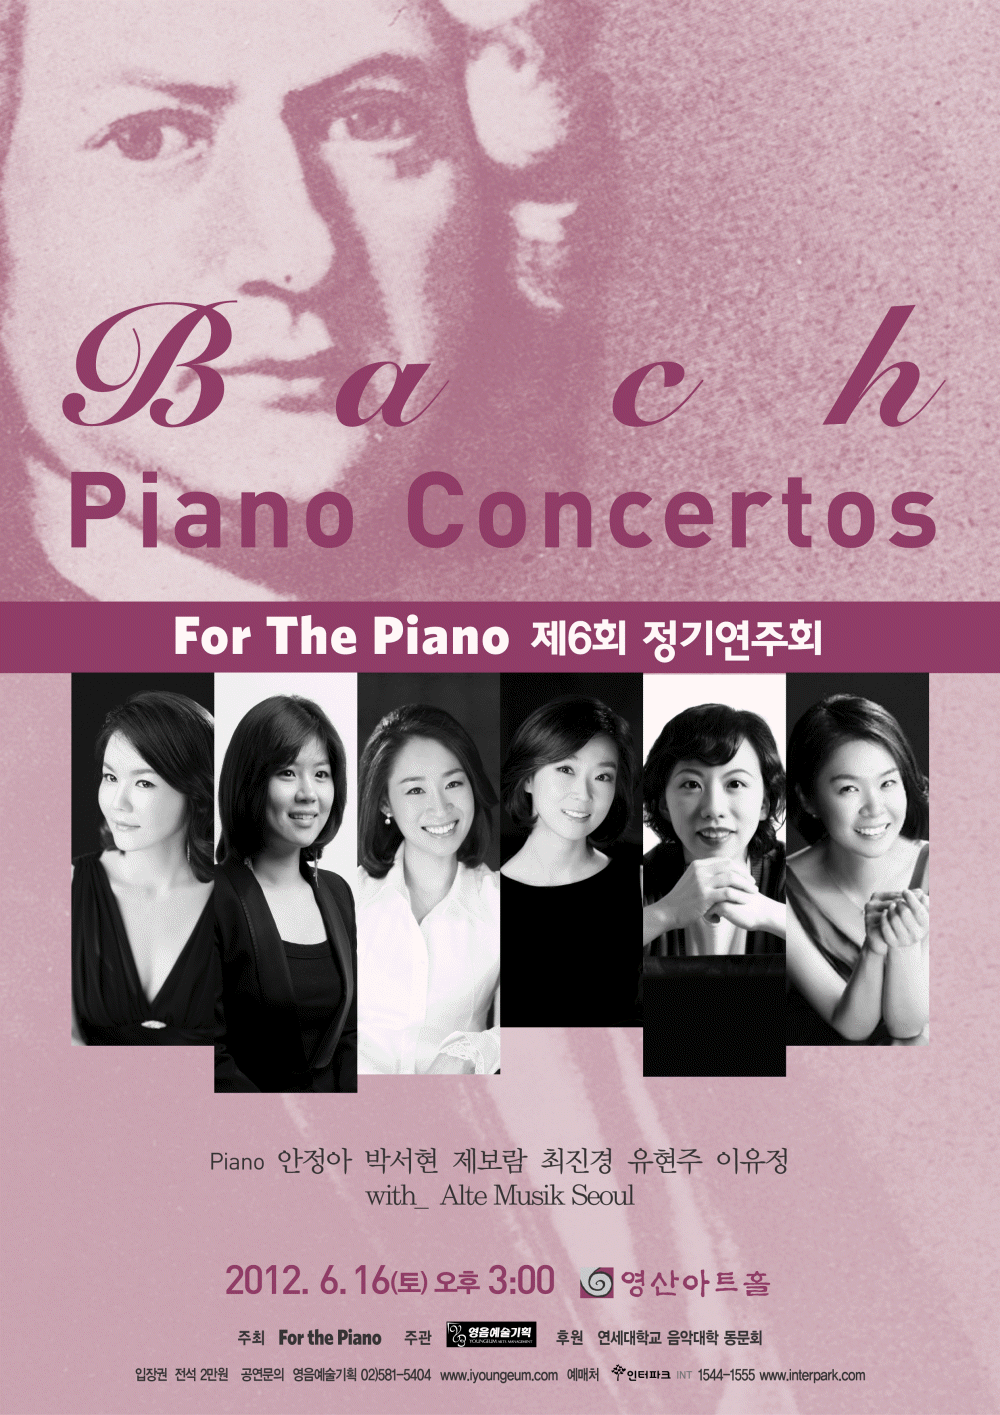 [6월 16일] For the Piano 제 6회 정기연주회 'Bach Concertos'   이미지